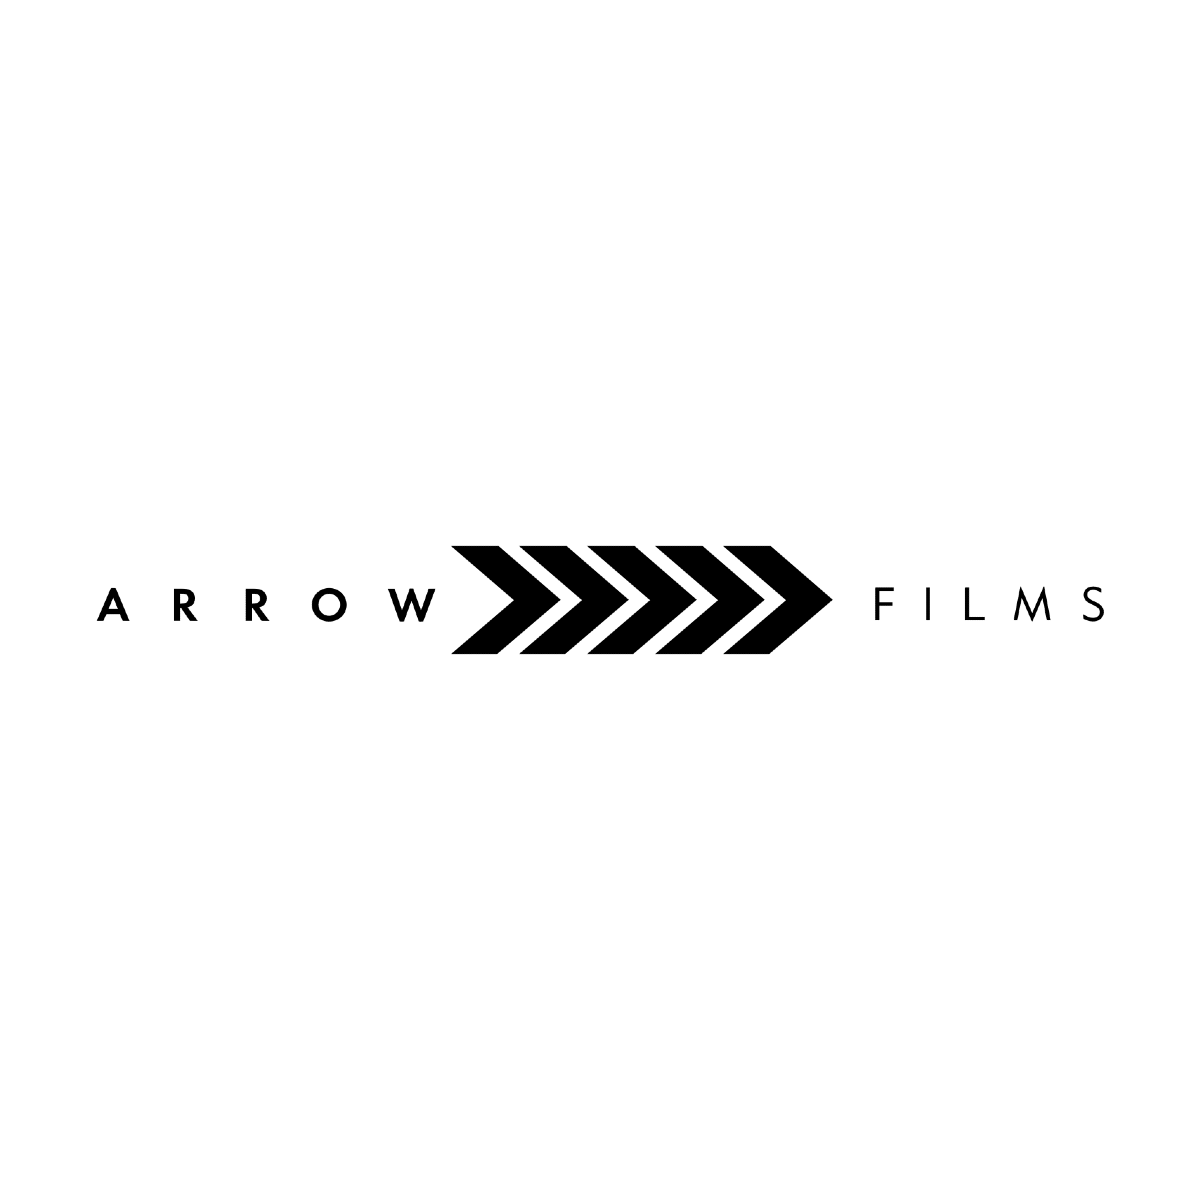 www.arrowfilms.com